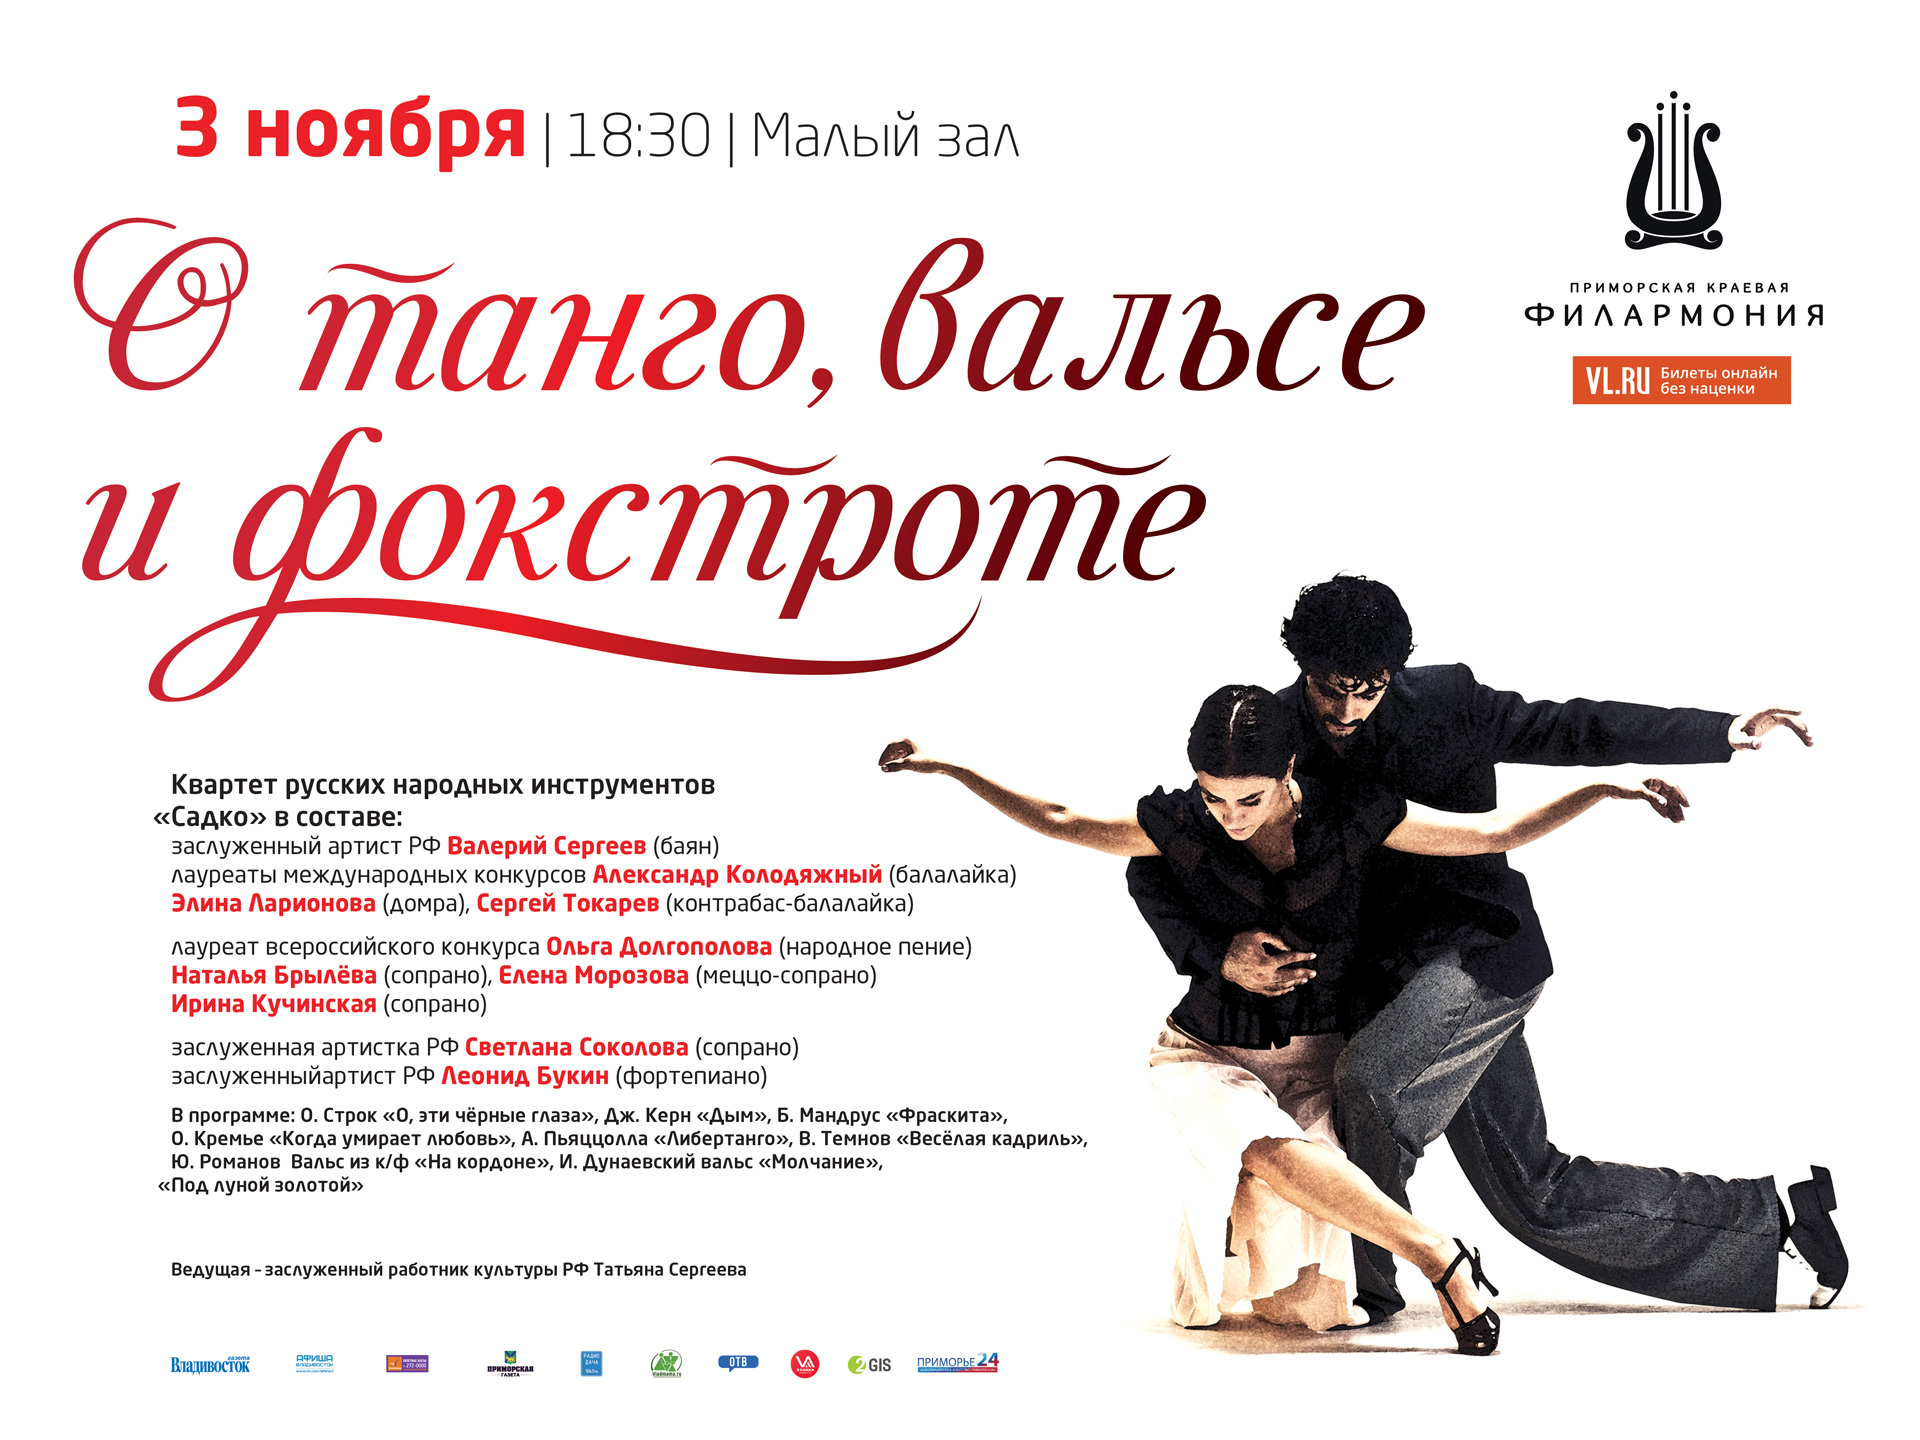 3 ноября Малый зал в 18:30 Концертная программа «О танго, вальсе и фокстроте…»